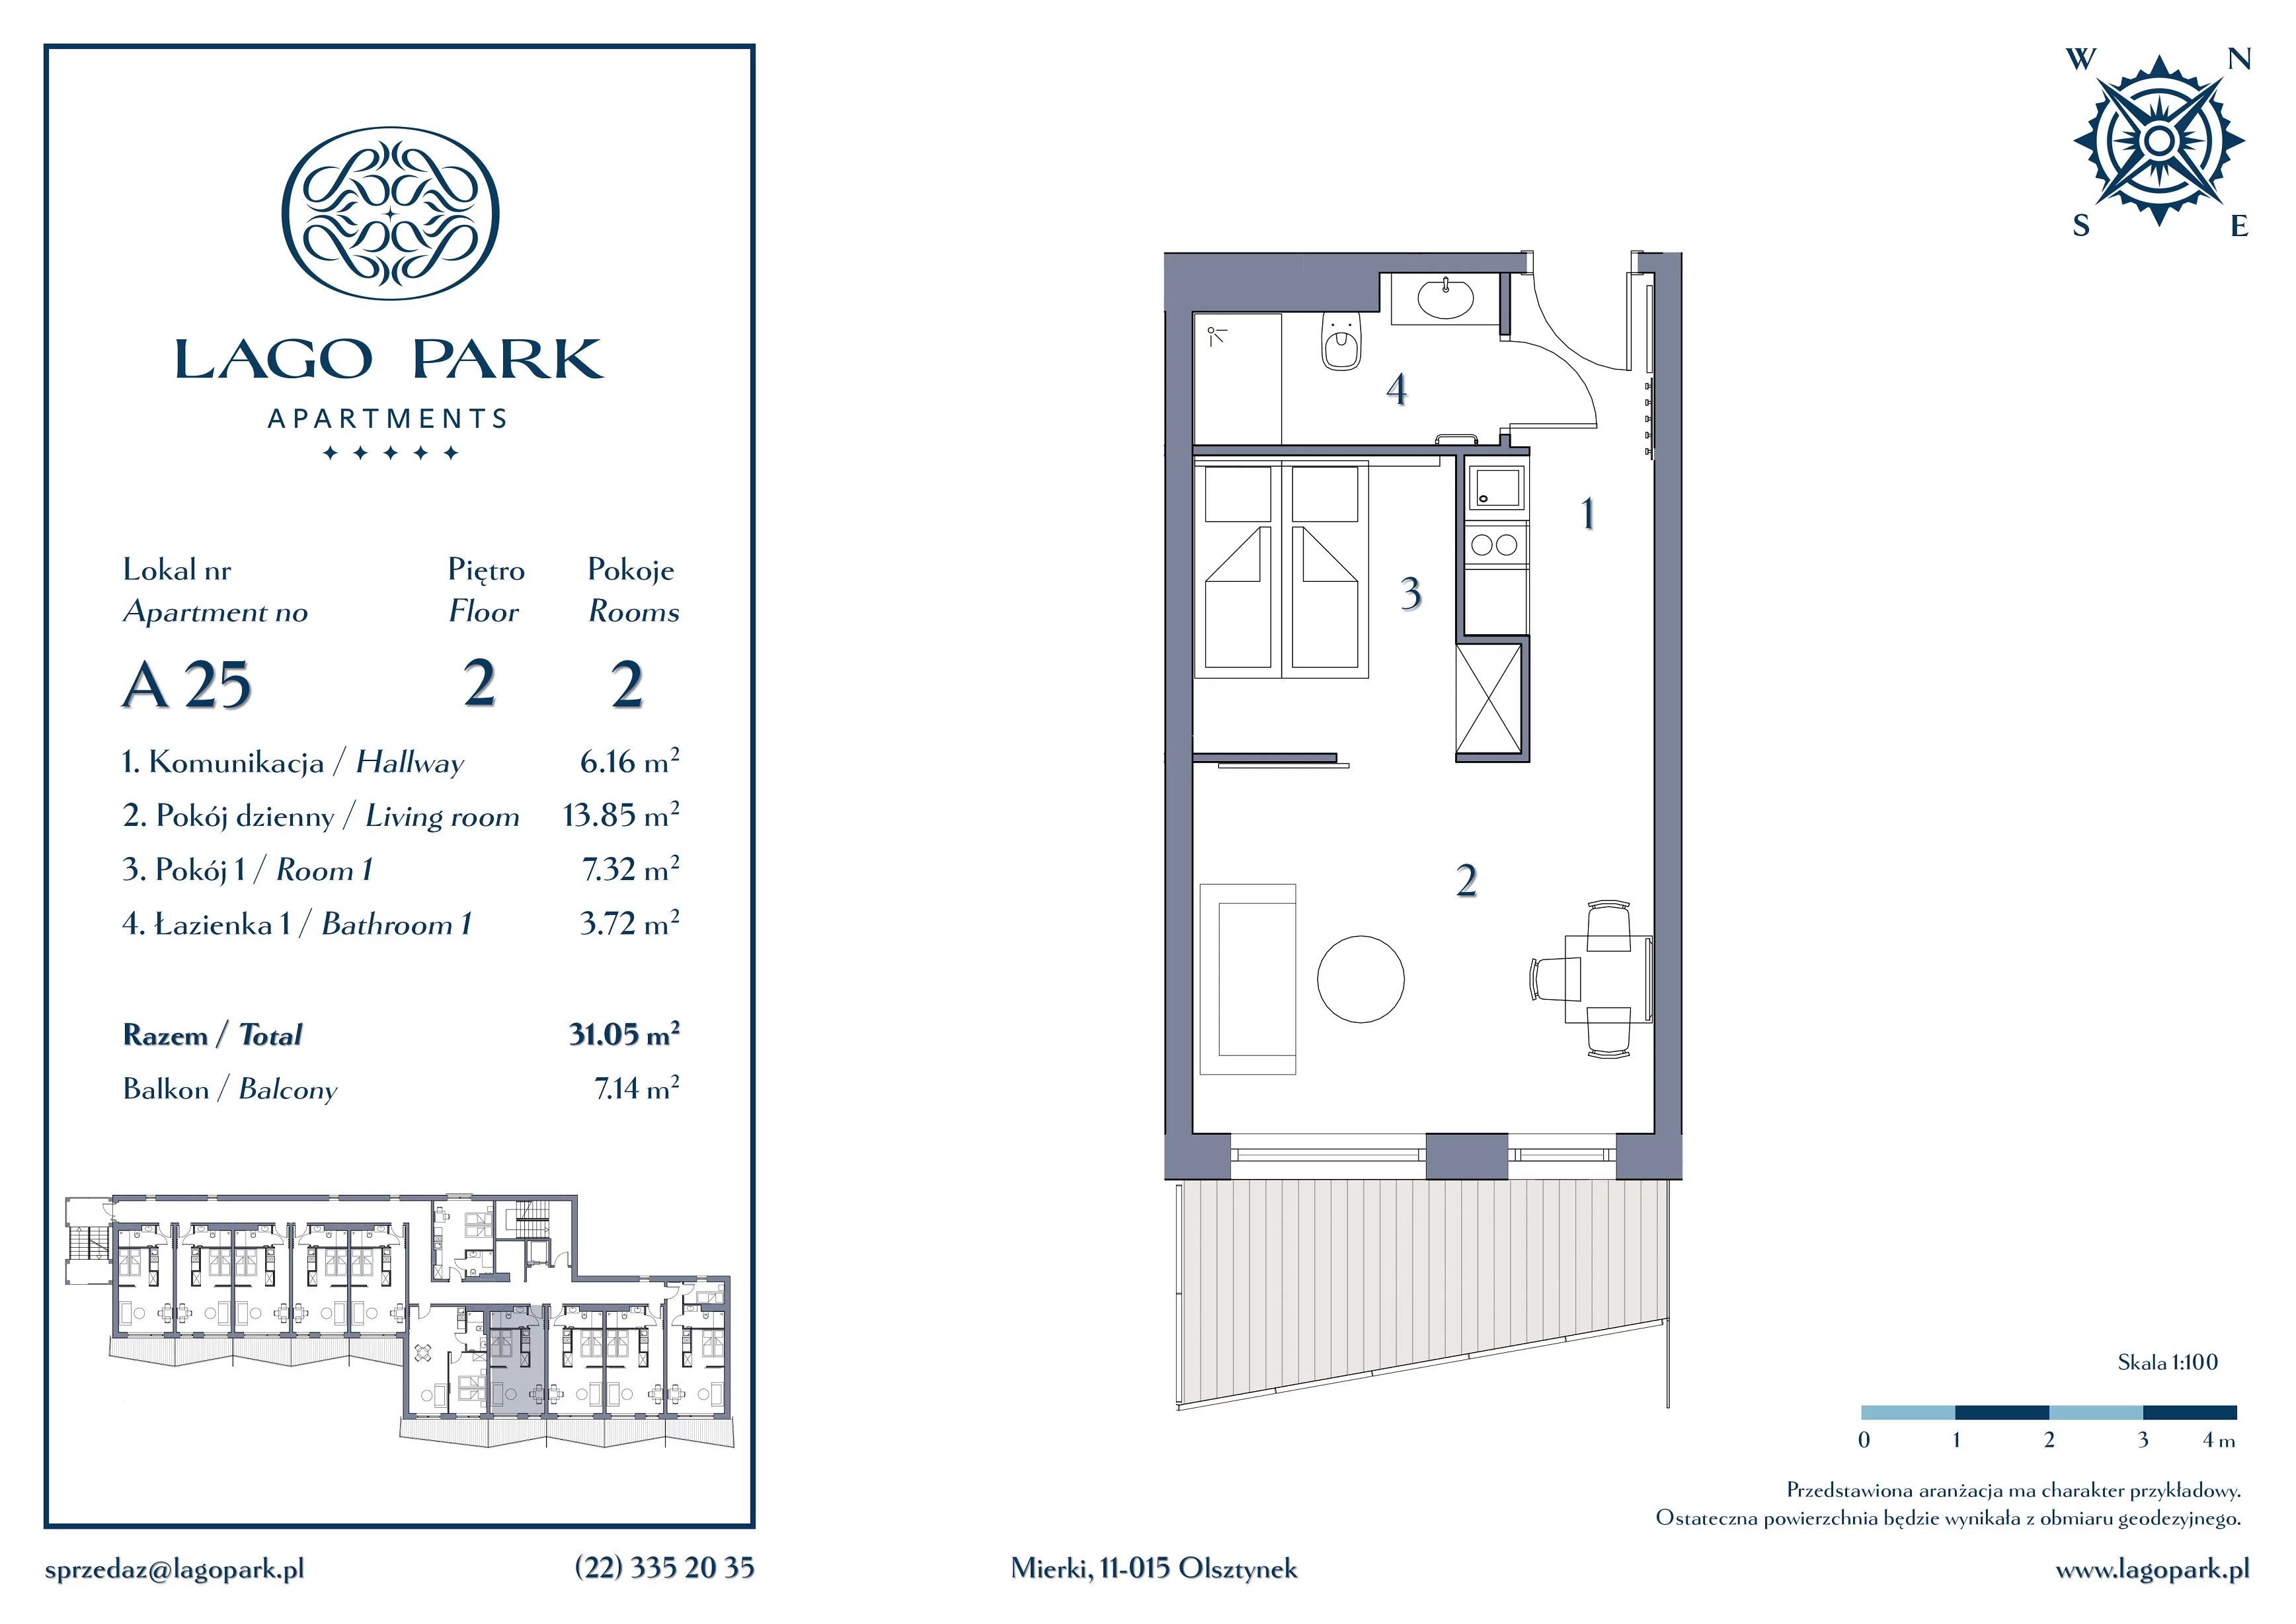 Apartament inwestycyjny 31,05 m², piętro 2, oferta nr A25, Lago Park Apartments by Aries, Mierki, Kołatek 2